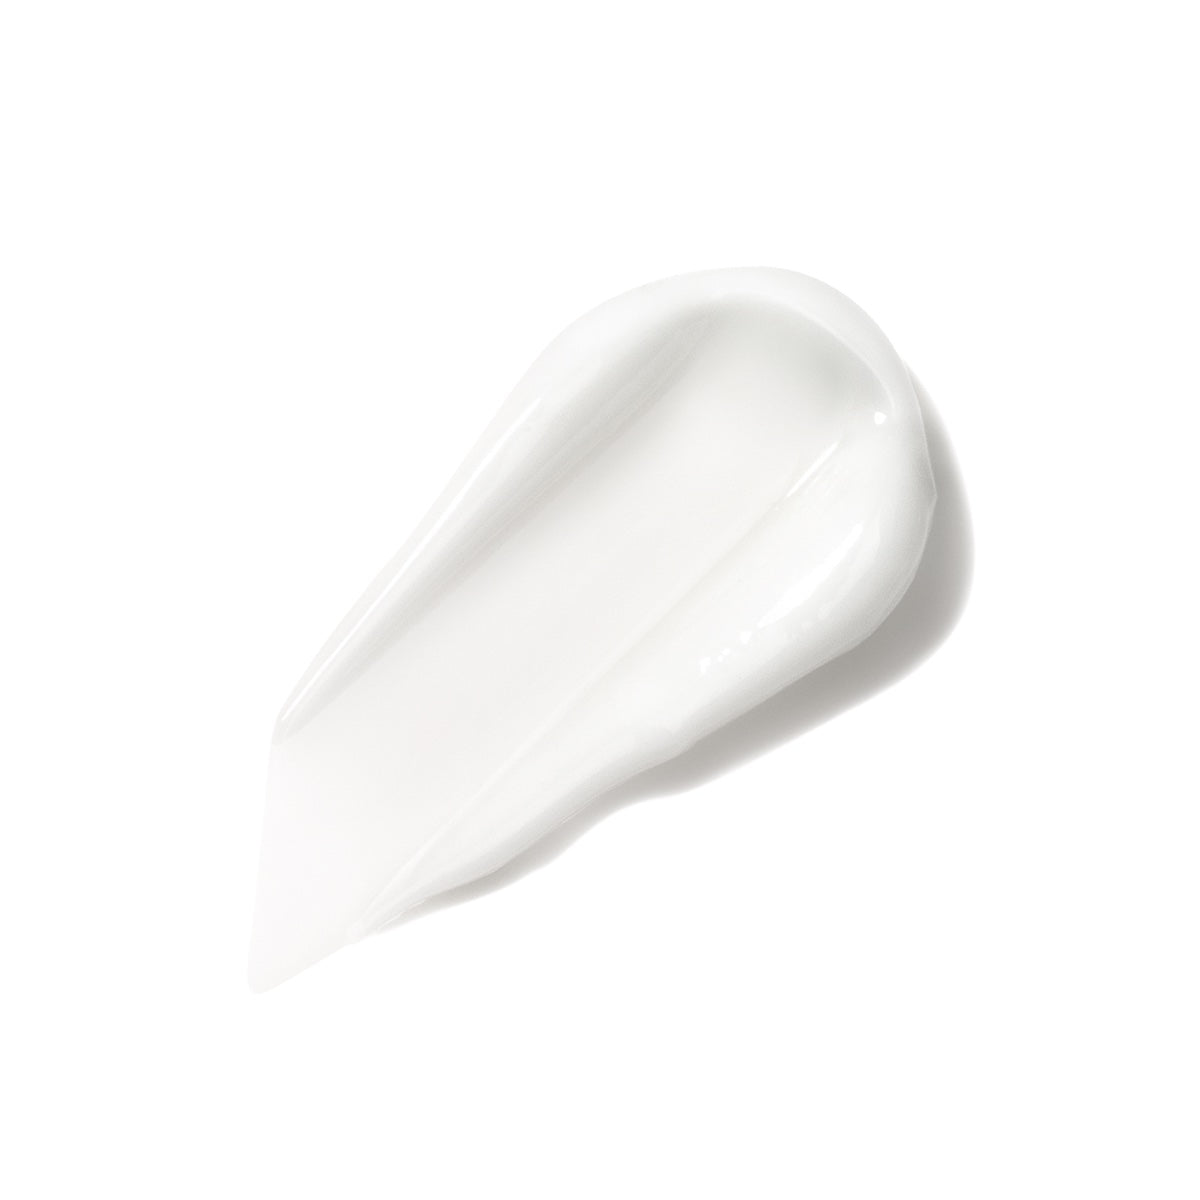 White cream swatch smear Calming Bio-Lipid  facial moisturizer  Dermal Essentials Medical Grade Skincare